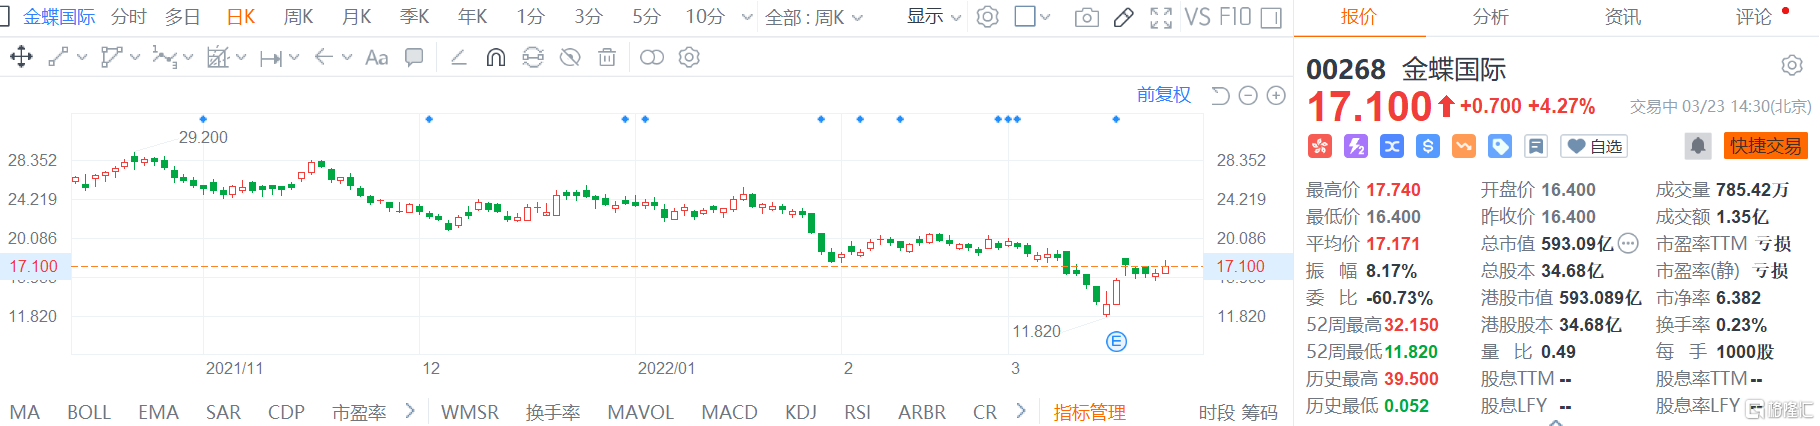 金蝶国际(0268.HK)冲高回落 盘中最大涨幅达8%现报17.1港元